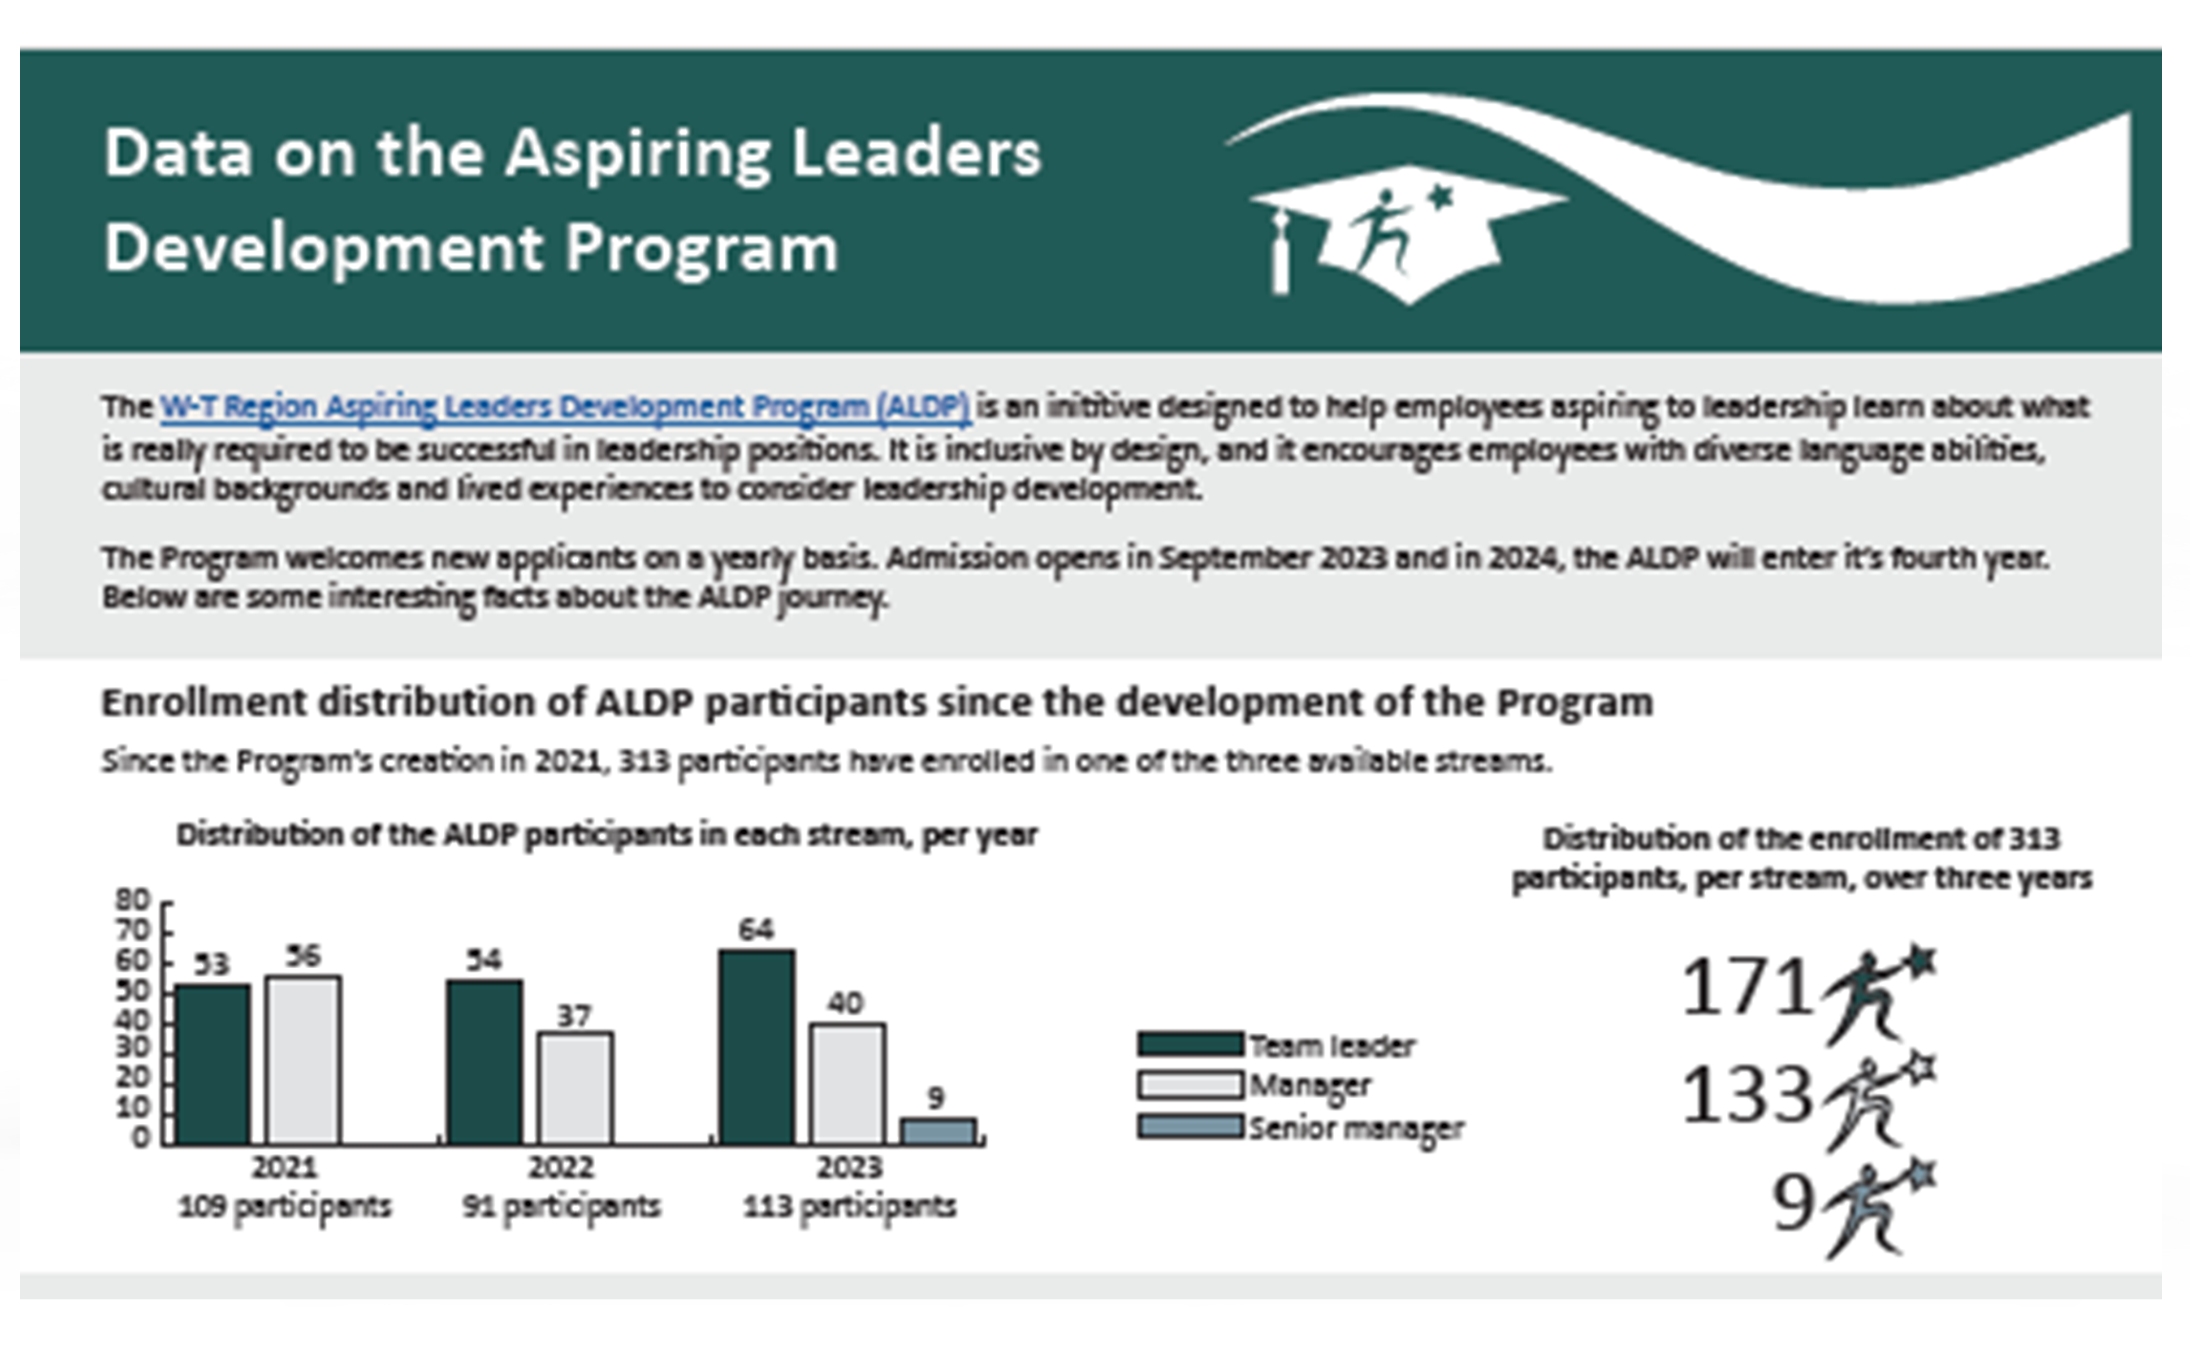 Data on the Aspiring Leaders Development Program